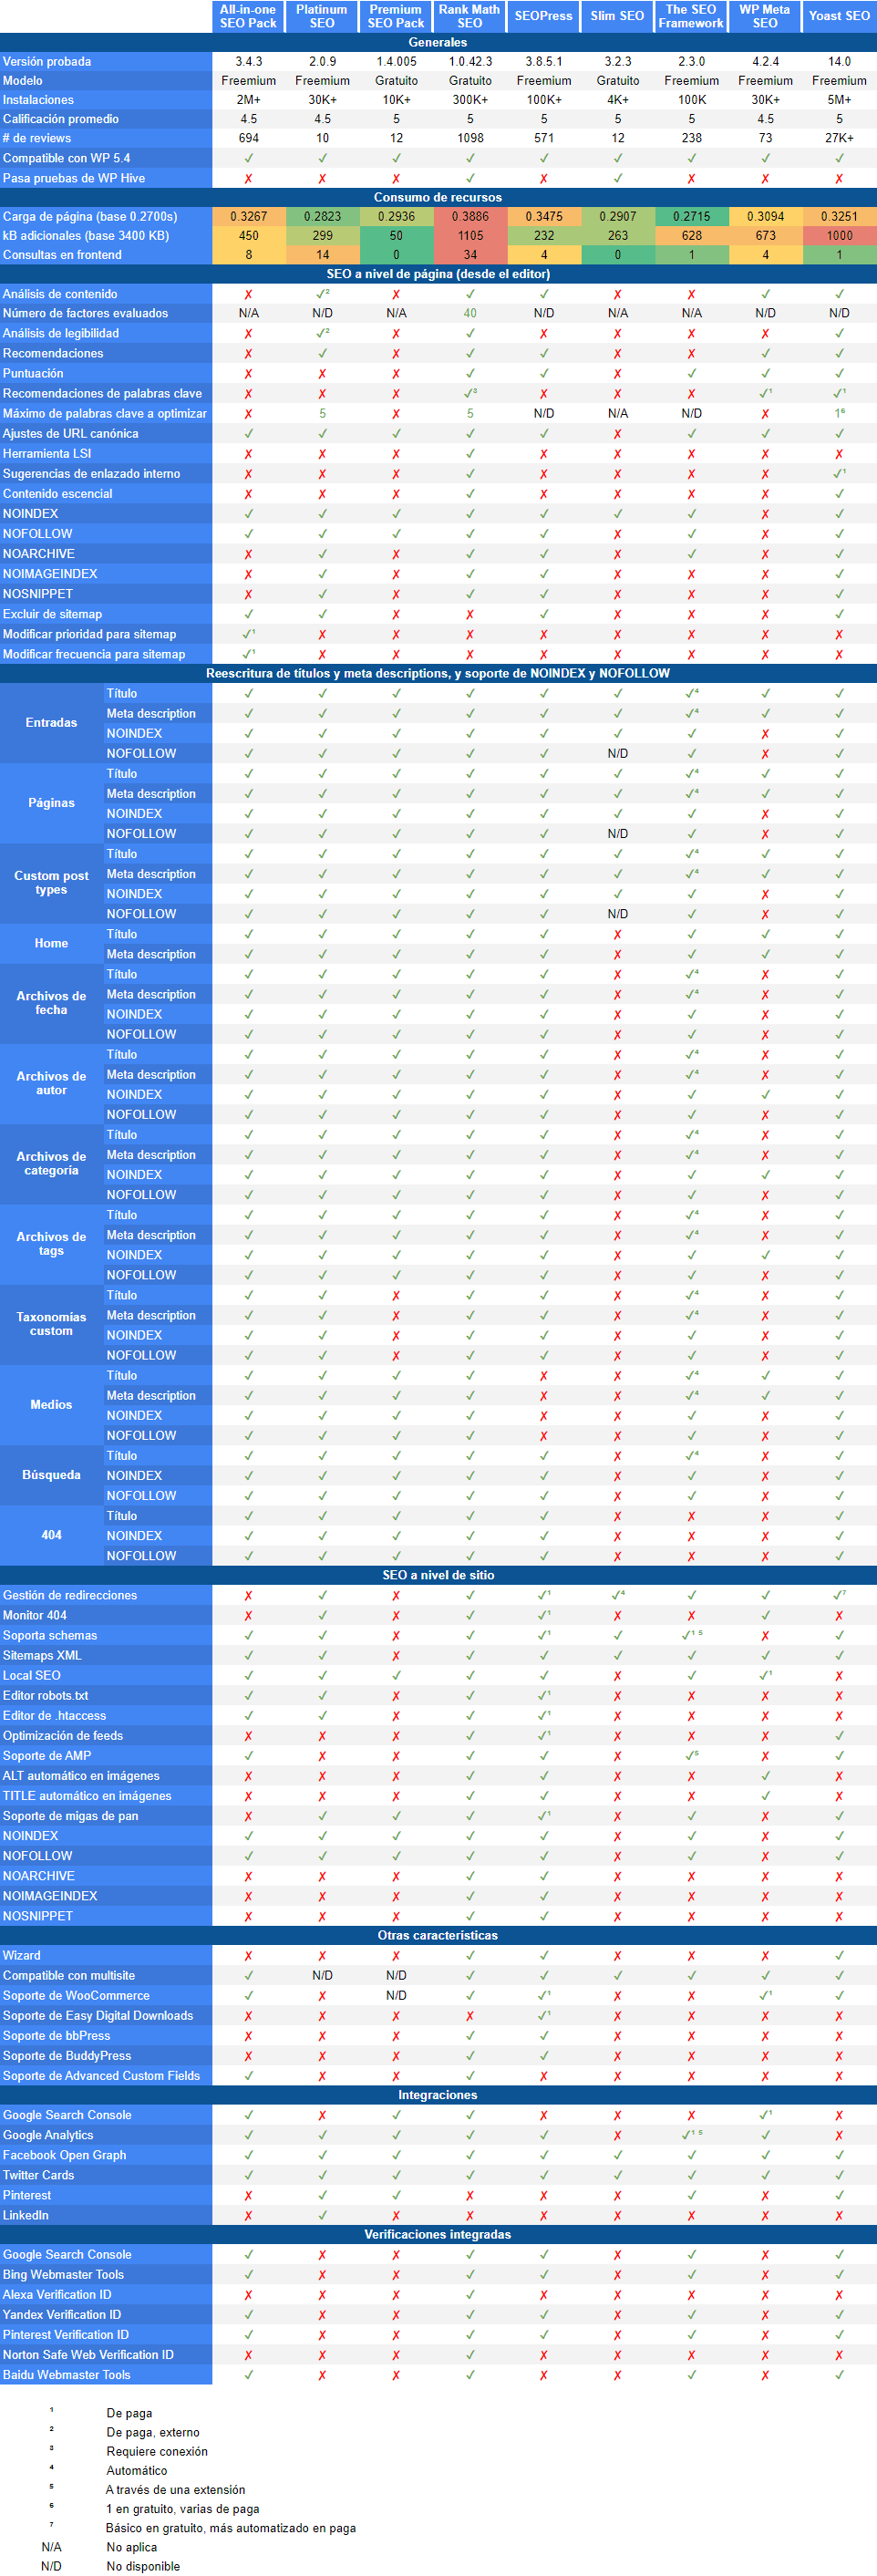 Tabla comparativa de características de plugins para SEO de WordPress